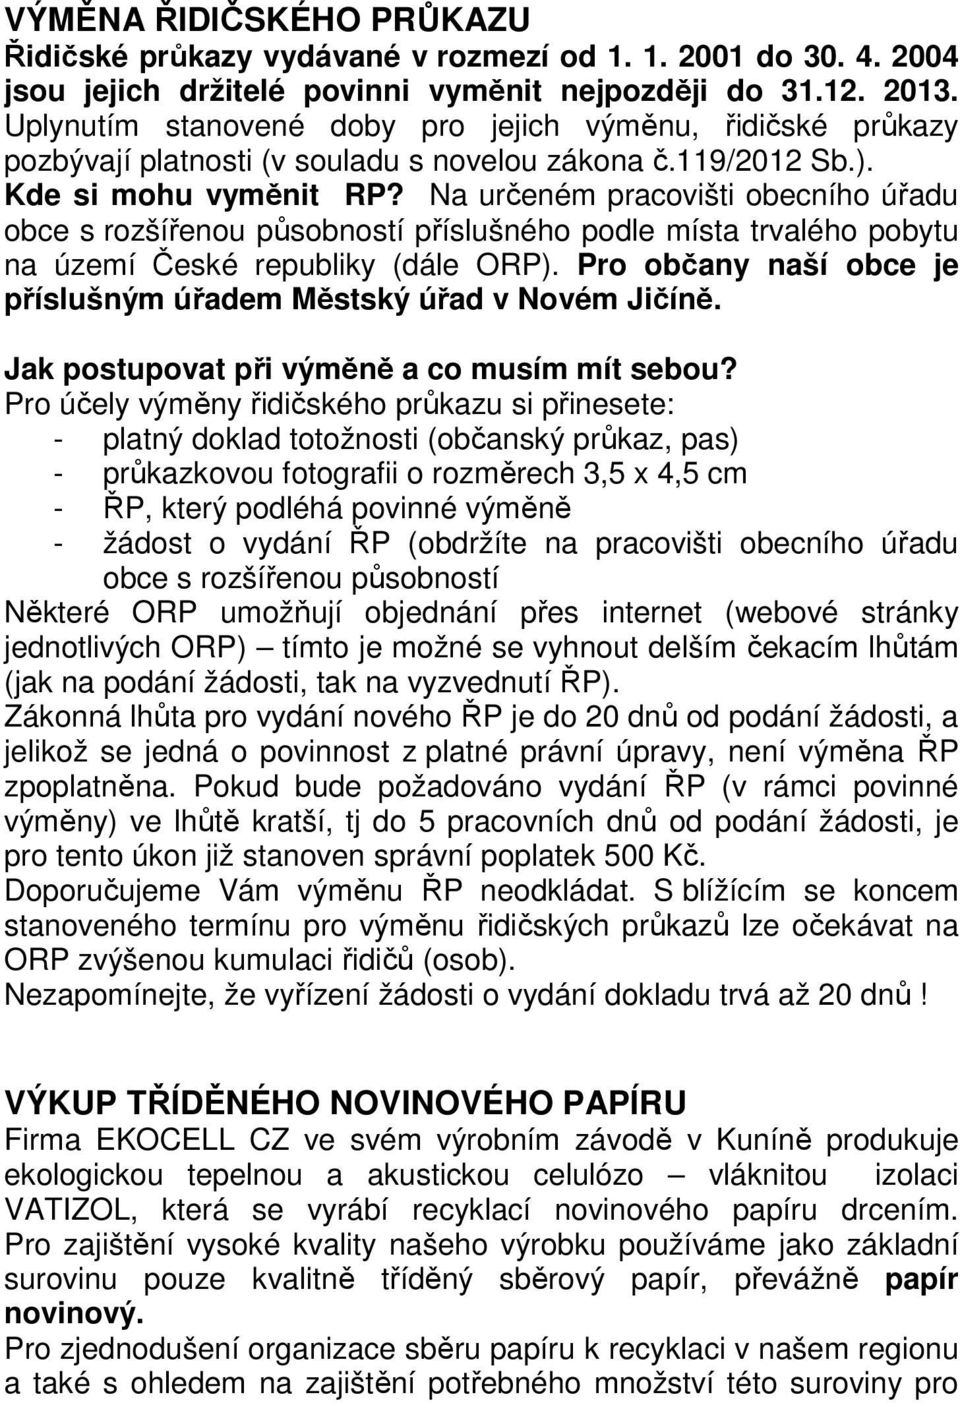 Na určeném pracovišti obecního úřadu obce s rozšířenou působností příslušného podle místa trvalého pobytu na území České republiky (dále ORP).